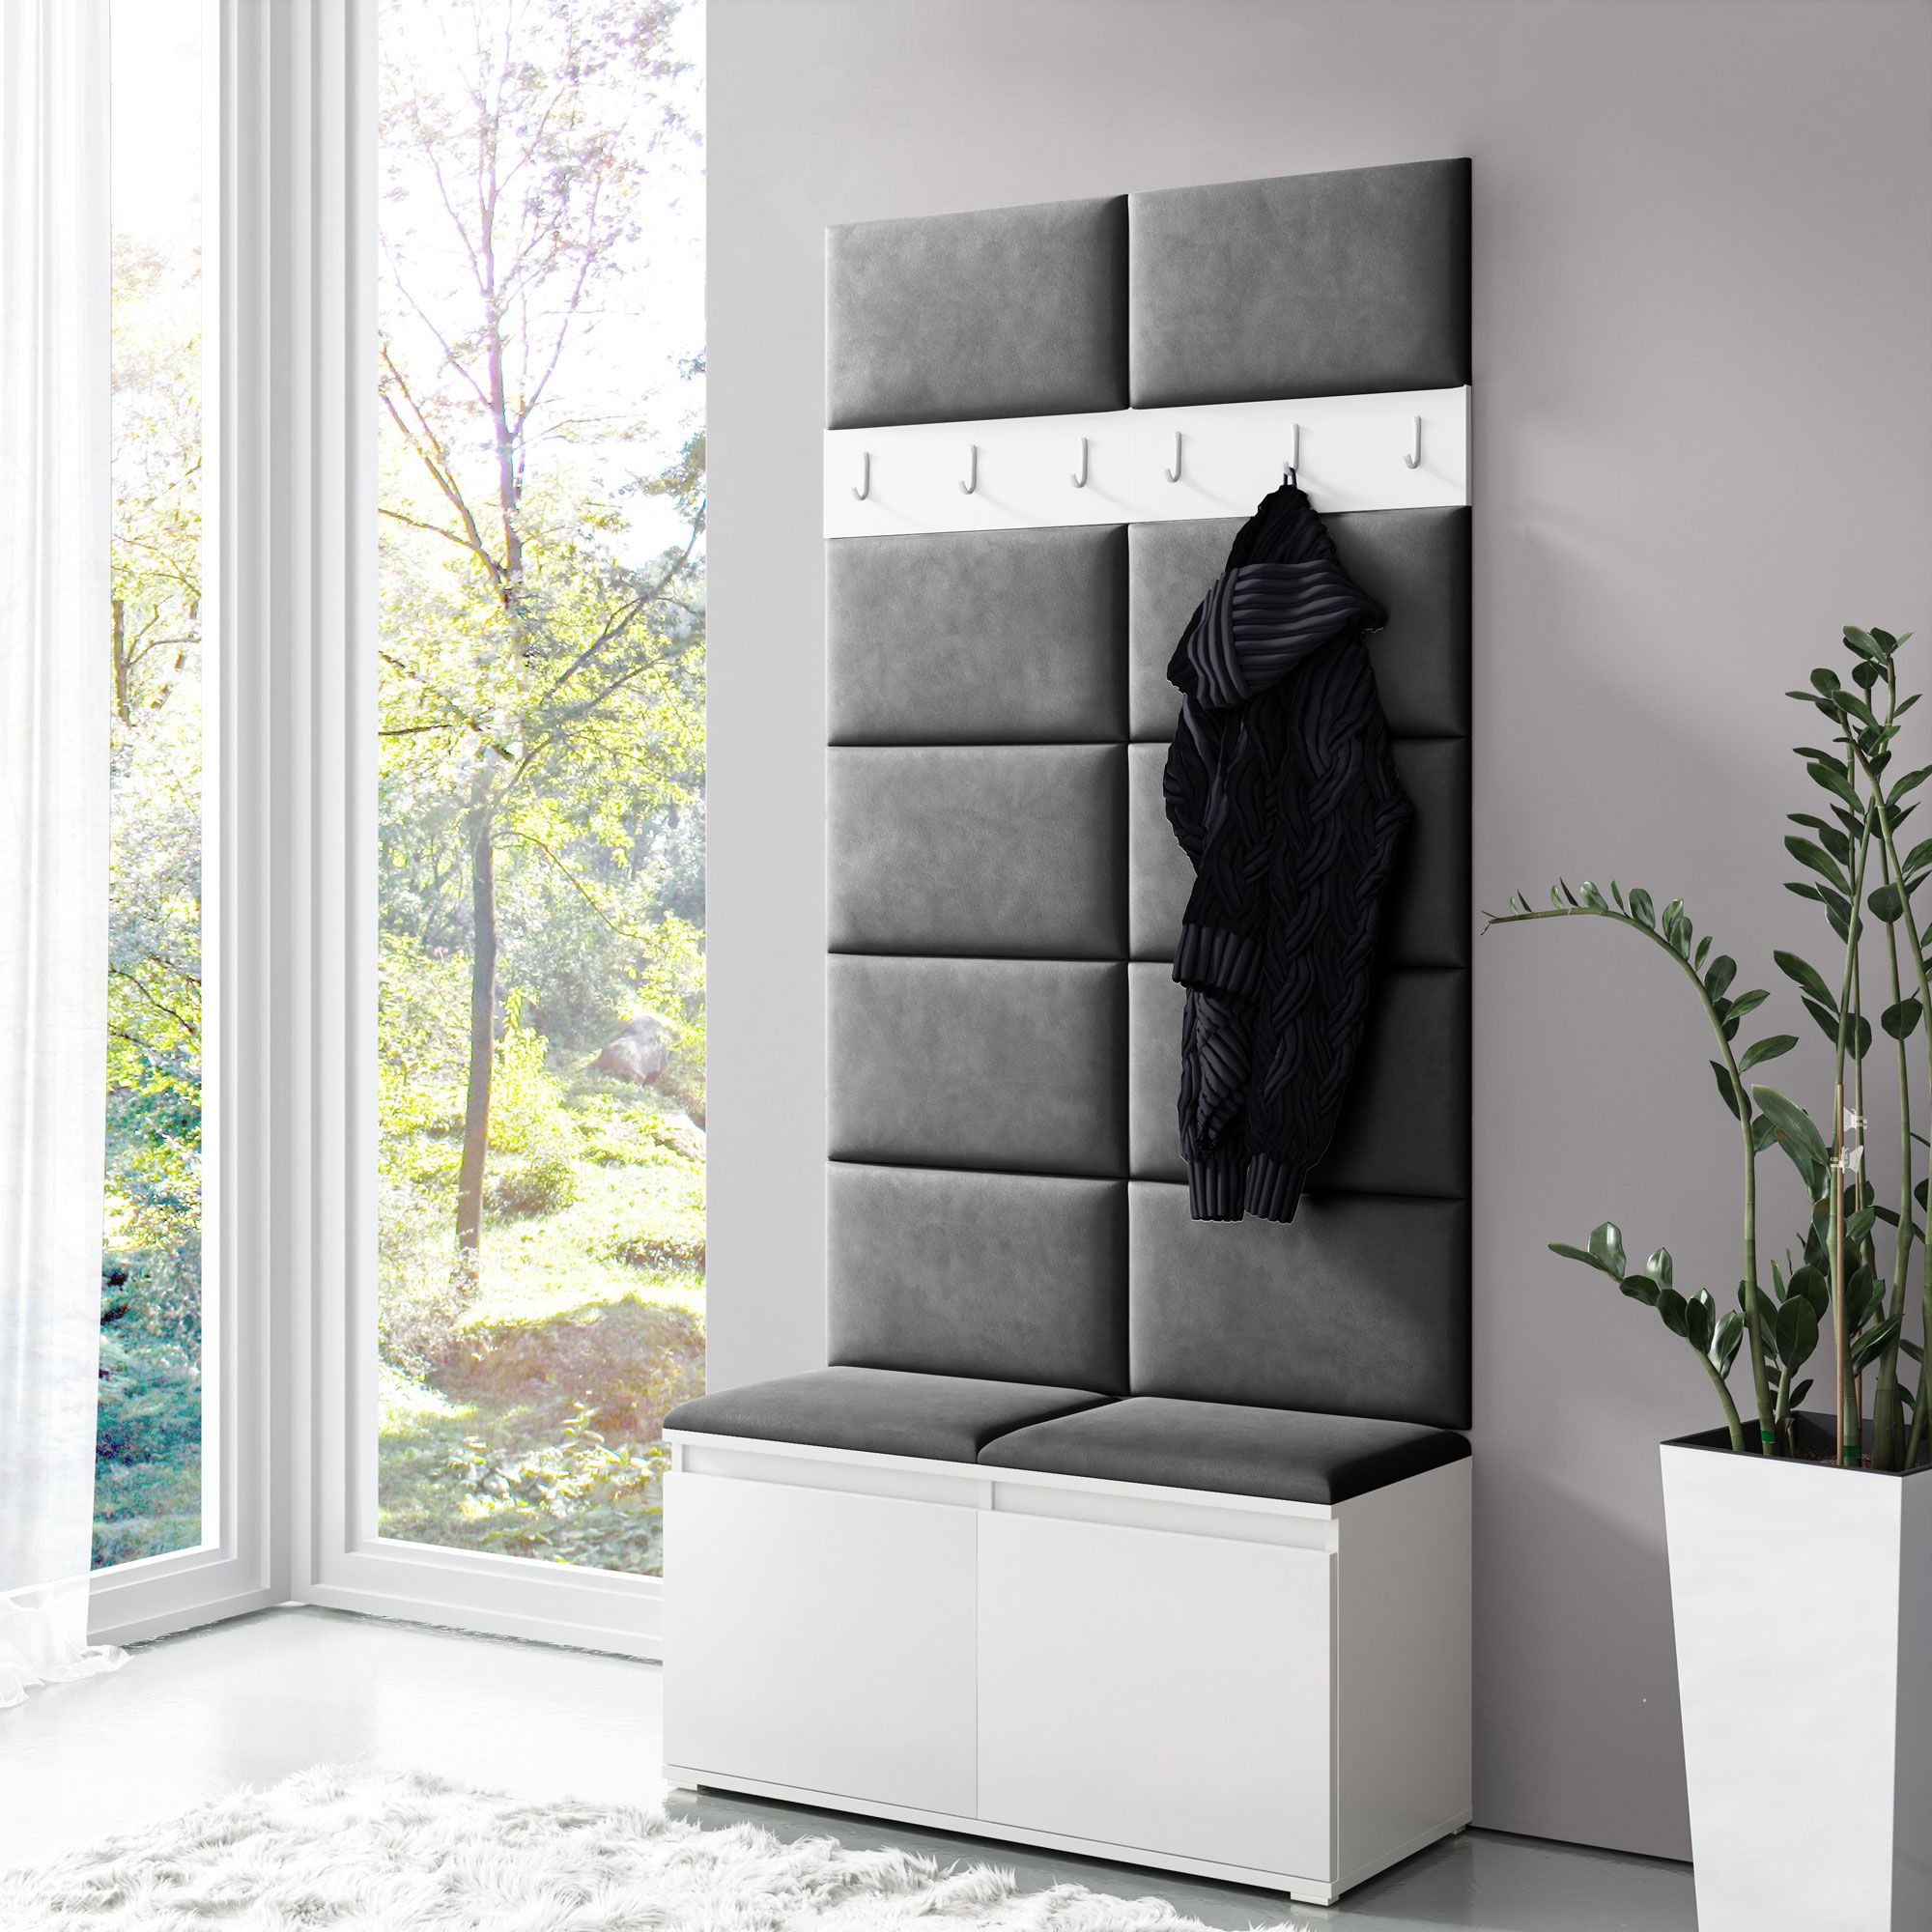 Schmale Ankleide / Garderobe 01 mit Sitzbank & Wand gepolstert, Weiß/Light Black, 215 x 100 x 40 cm, für 8 Paar Schuhe, 6 Kleiderhaken, 4 Fächer